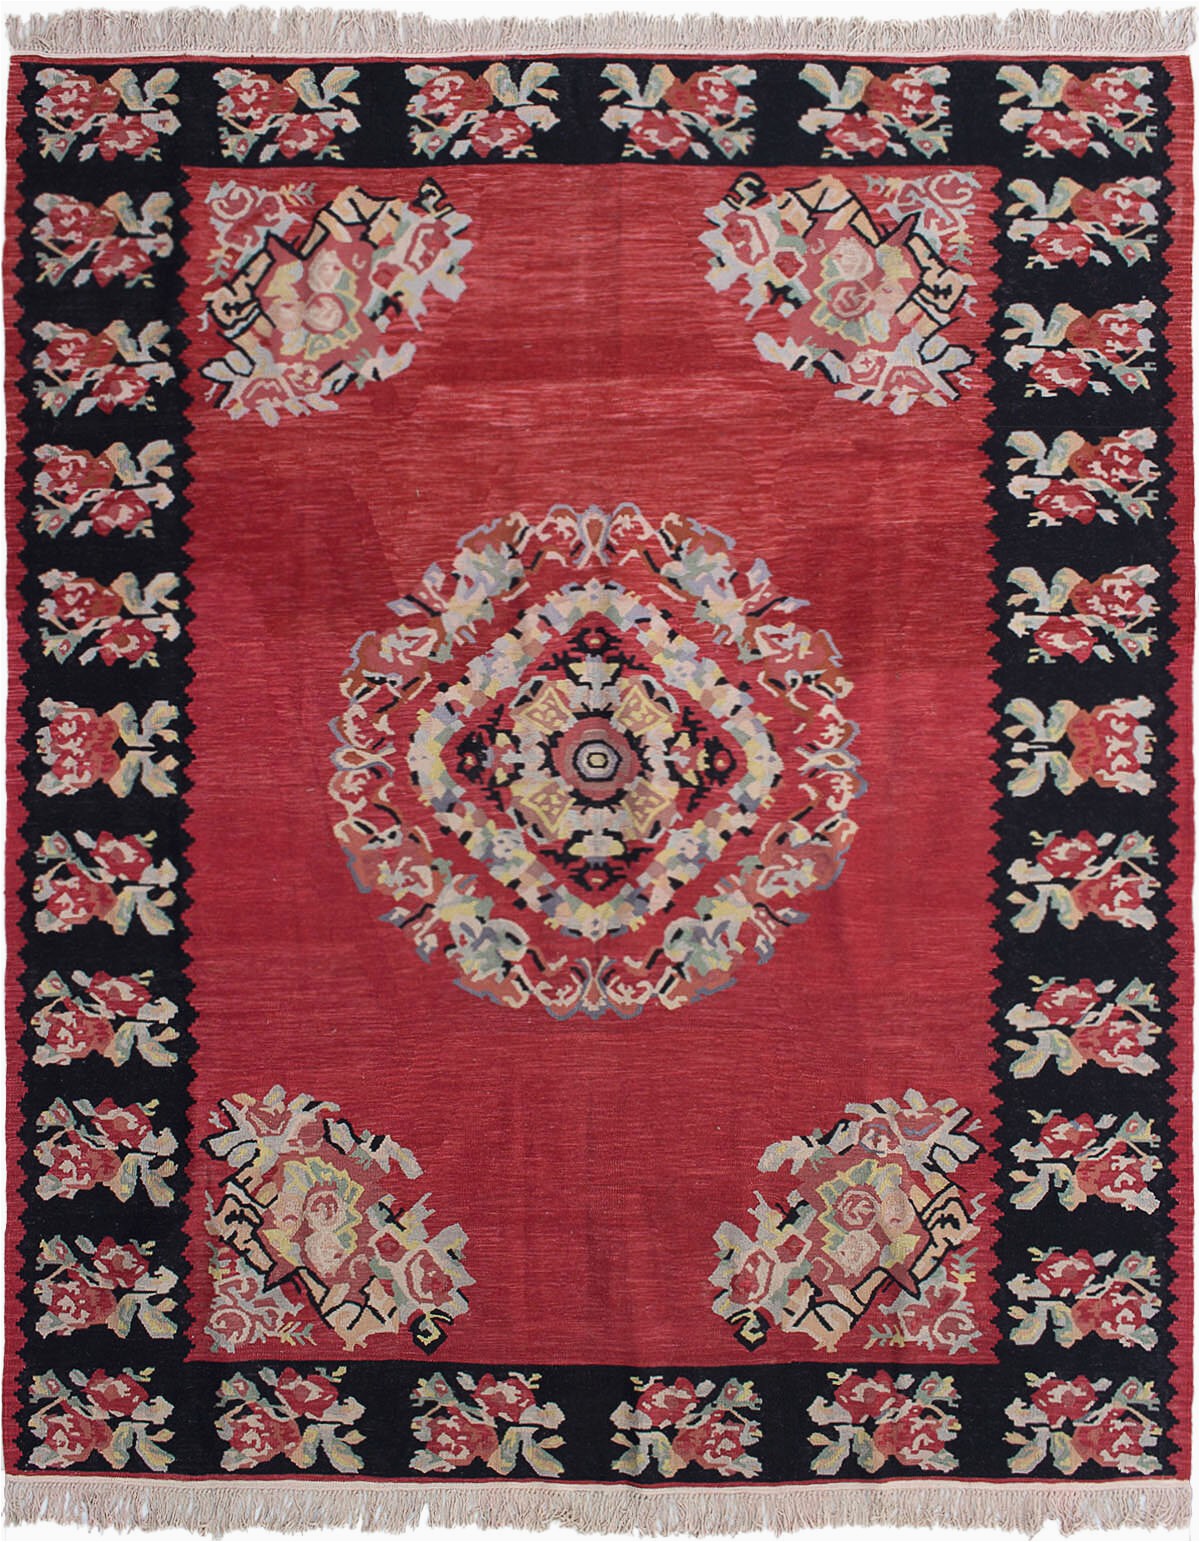 bauxite floral handmade flatweave wool redblackcream area rug